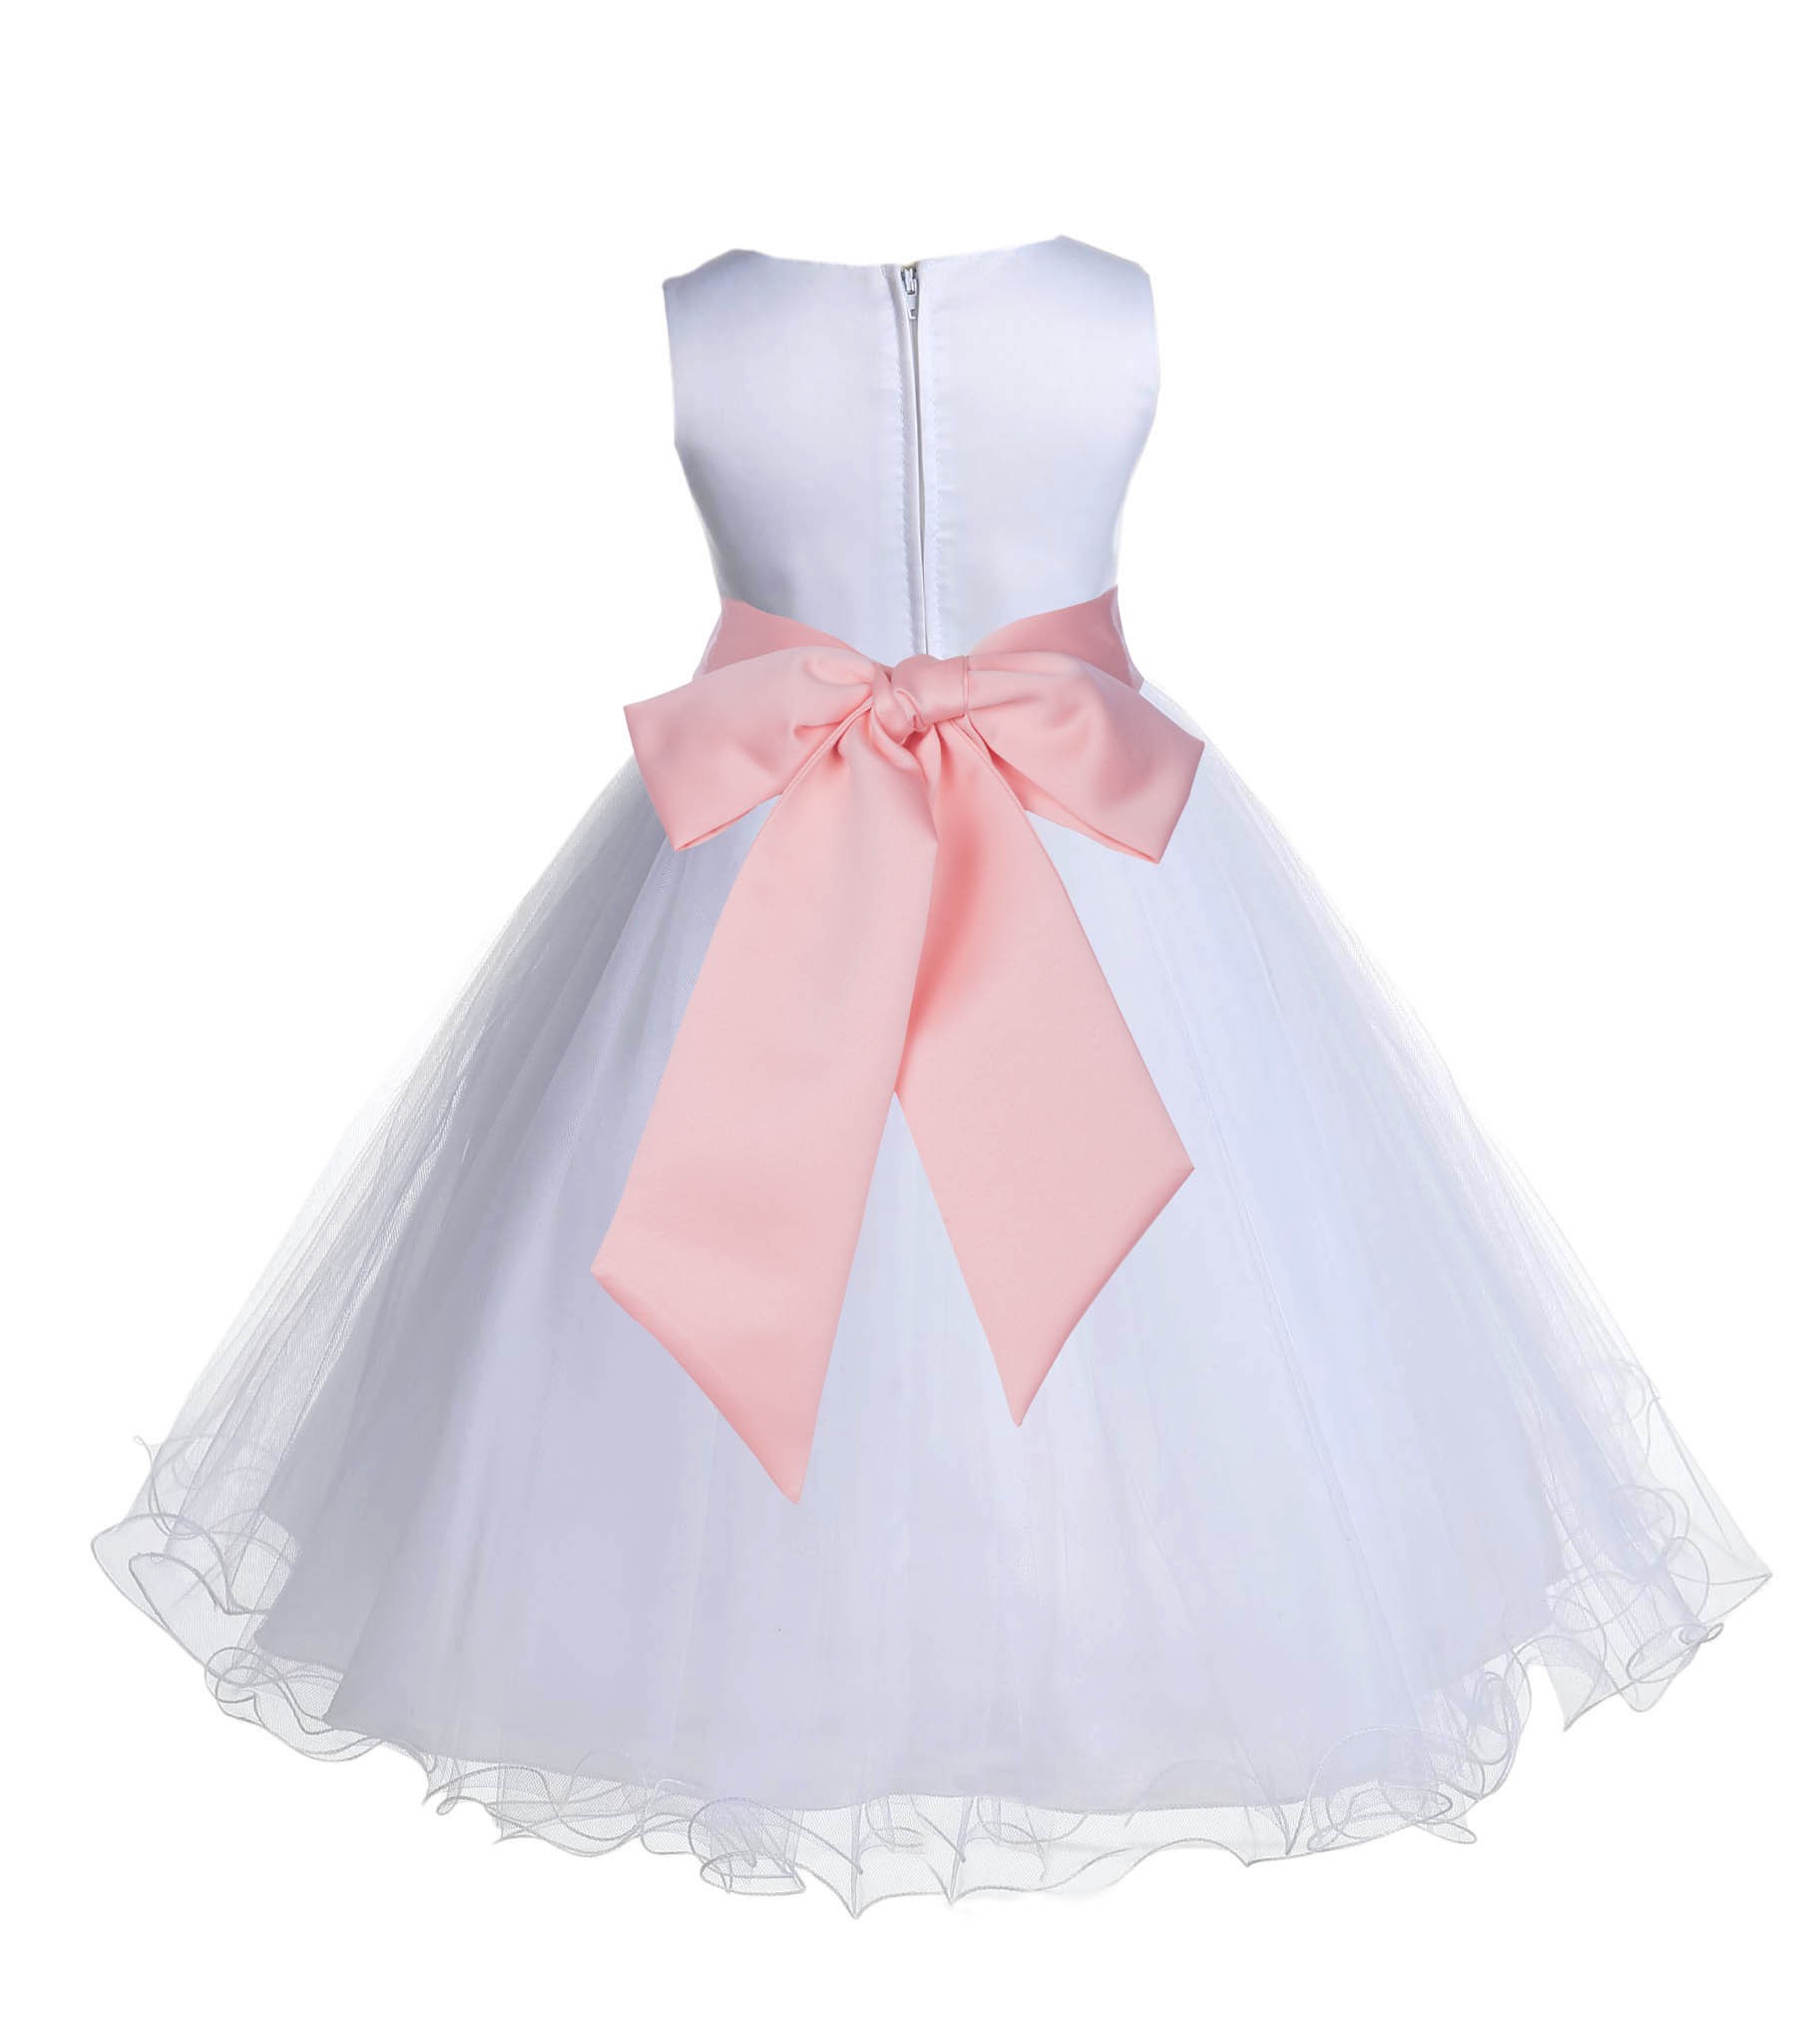 White/Peach Tulle Rattail Edge Flower Girl Dress Wedding Bridal 829S